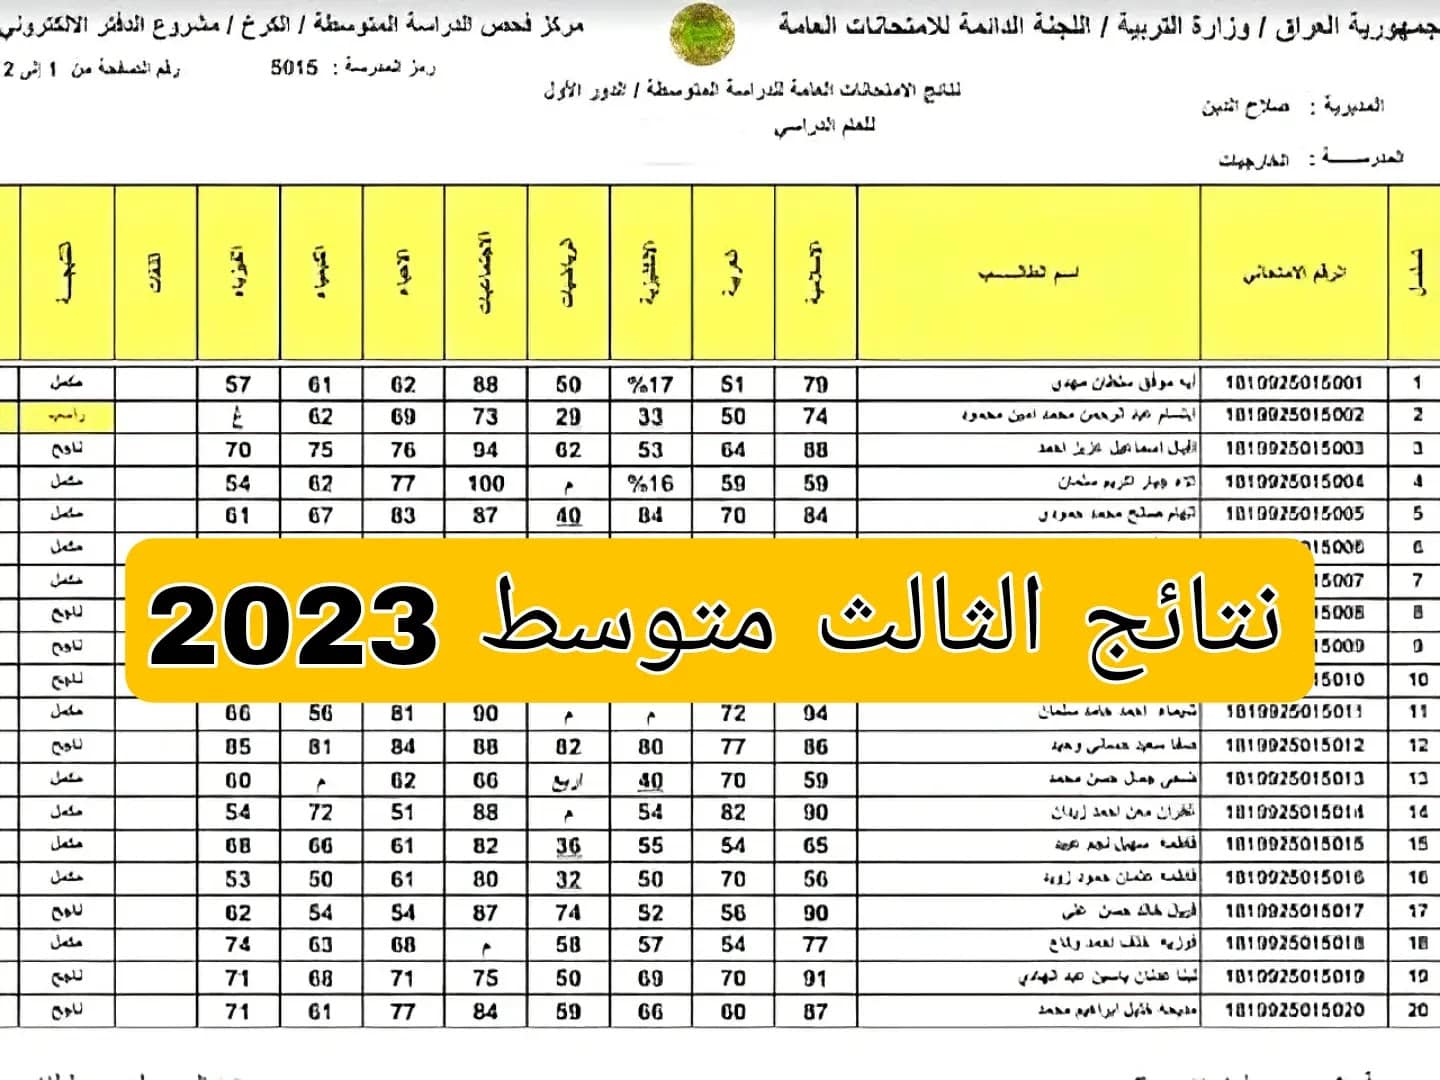 لينك اعلان نتائج الثالث متوسط 2023 الدور الاول الرصافه الاولى